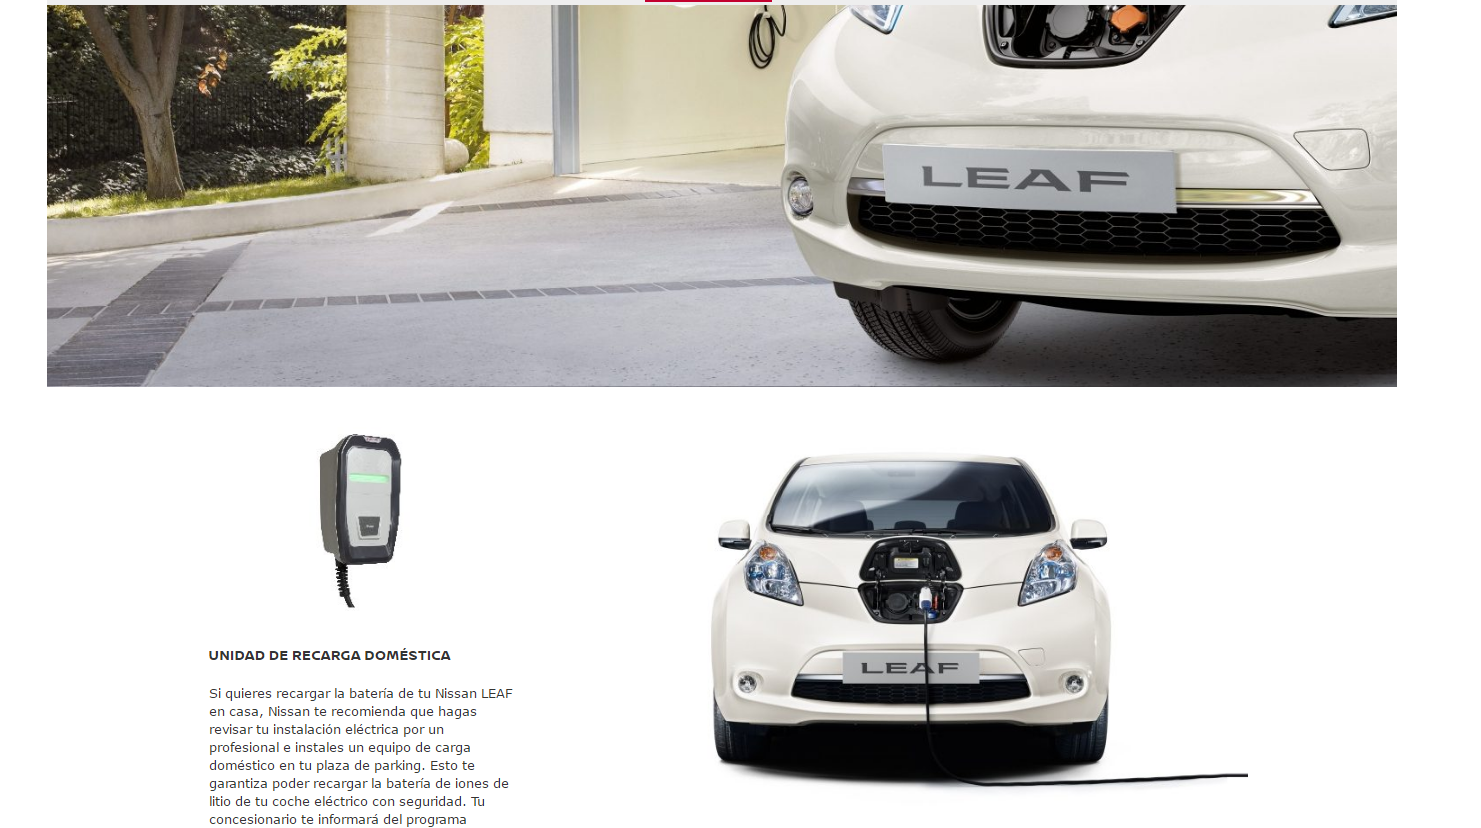 La eHome de Circontrol, Nissan Leaf e Iniesta para promocionar el vehículo eléctrico